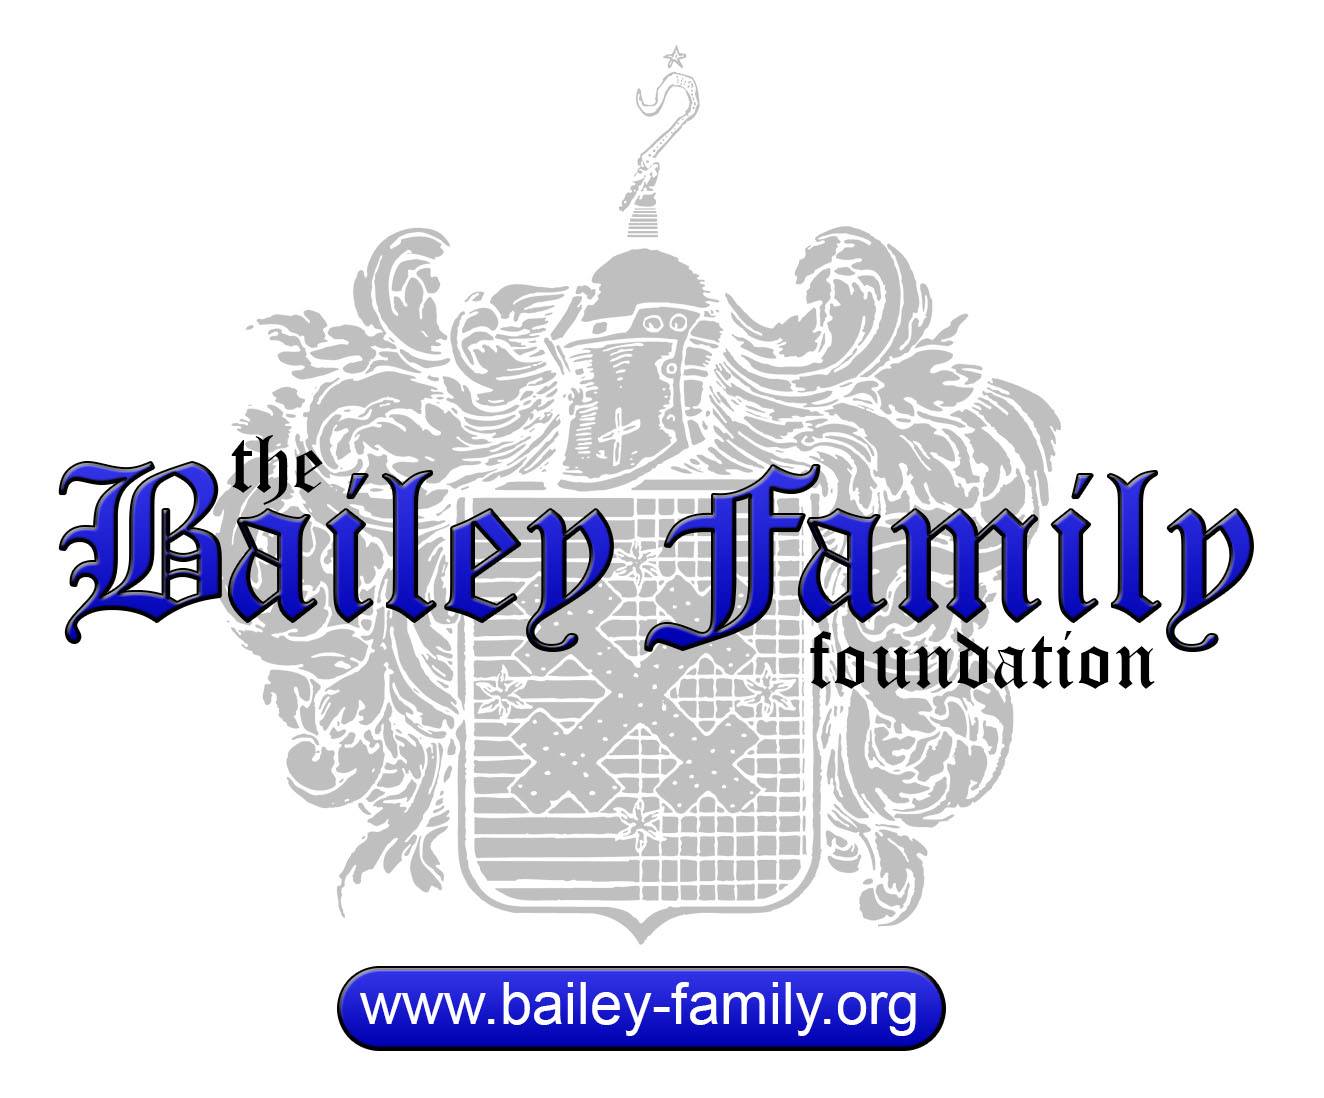 BaileyFamFoundation